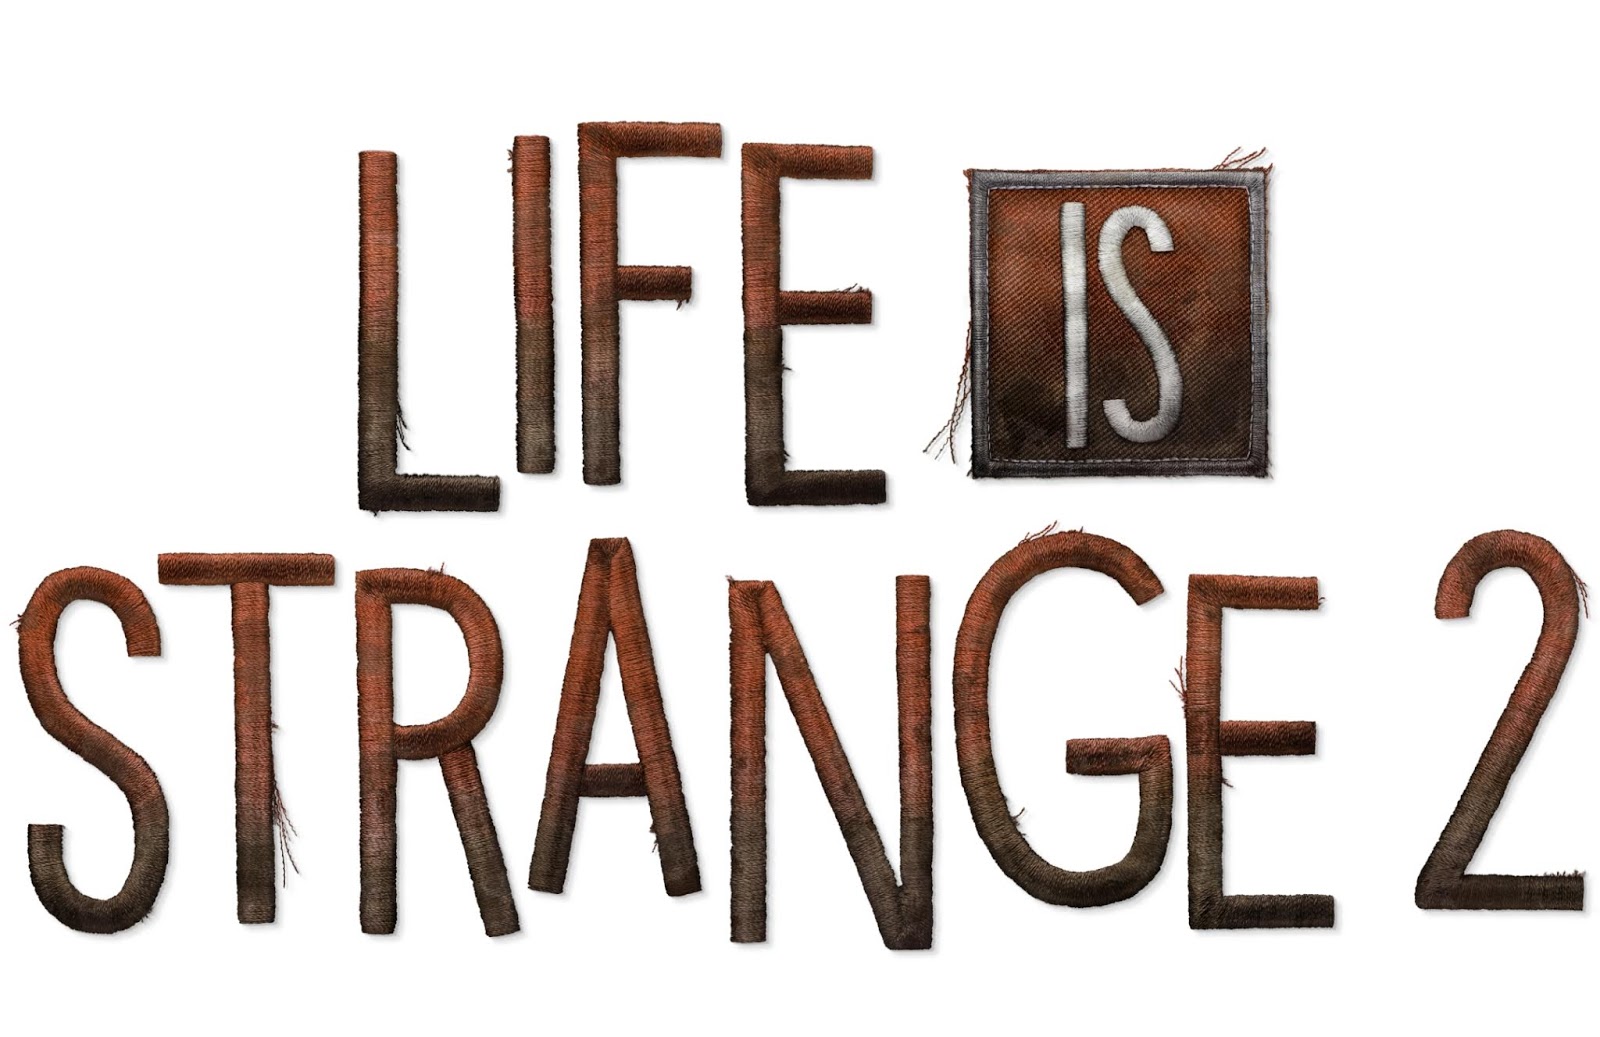 Sing is life. Life is Strange логотип. Life is Strange 2 logo. Life is Strange 2 эпизод 1 лого. Life is Strange надпись.